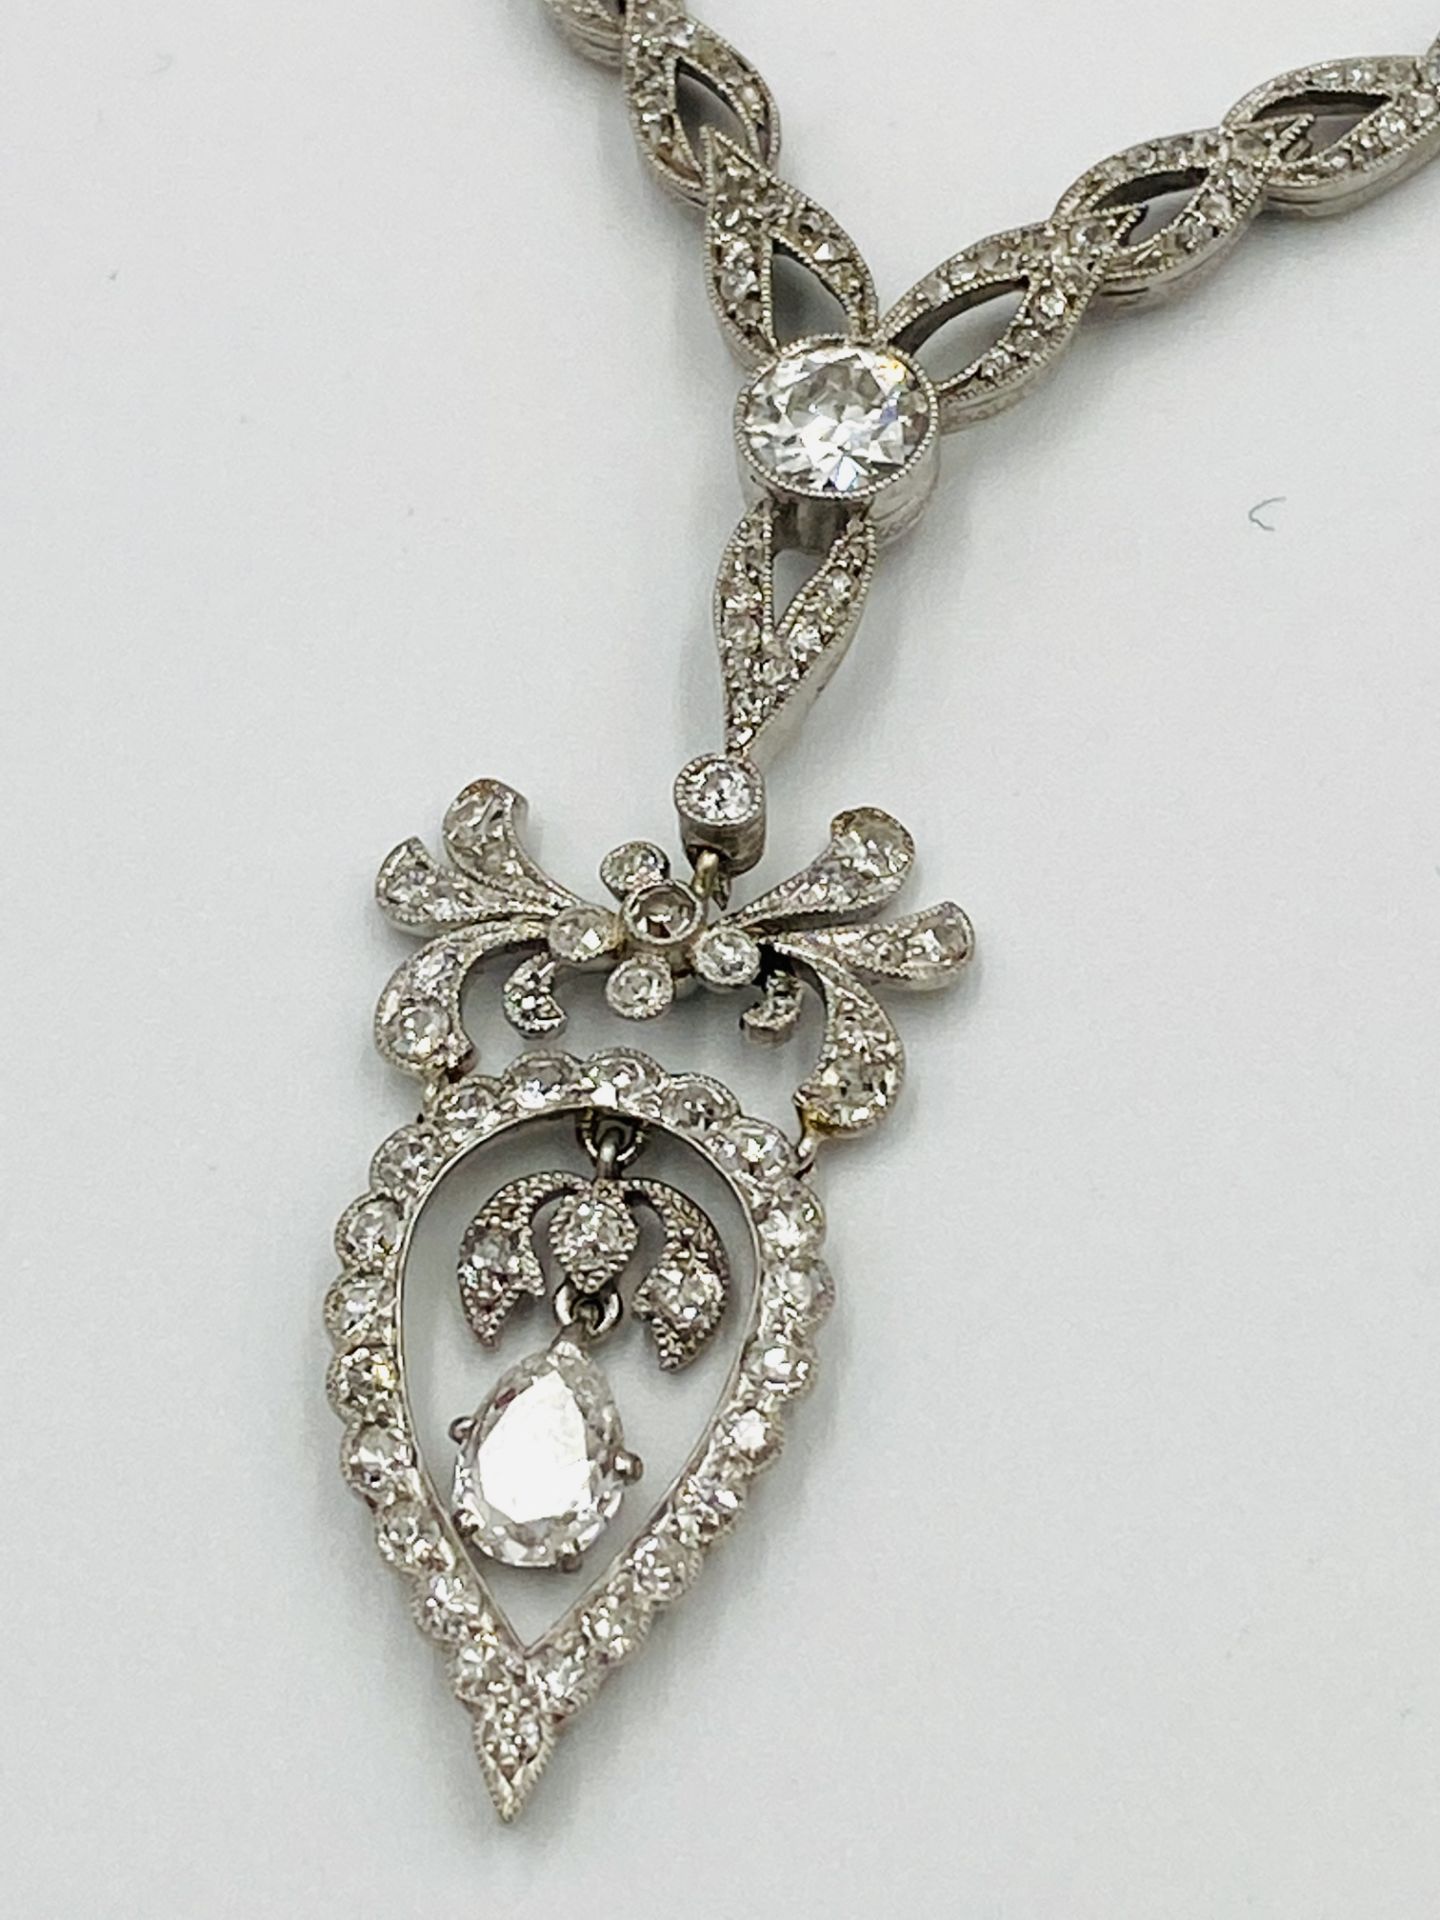 Edwardian white gold and diamond necklace - Image 2 of 10